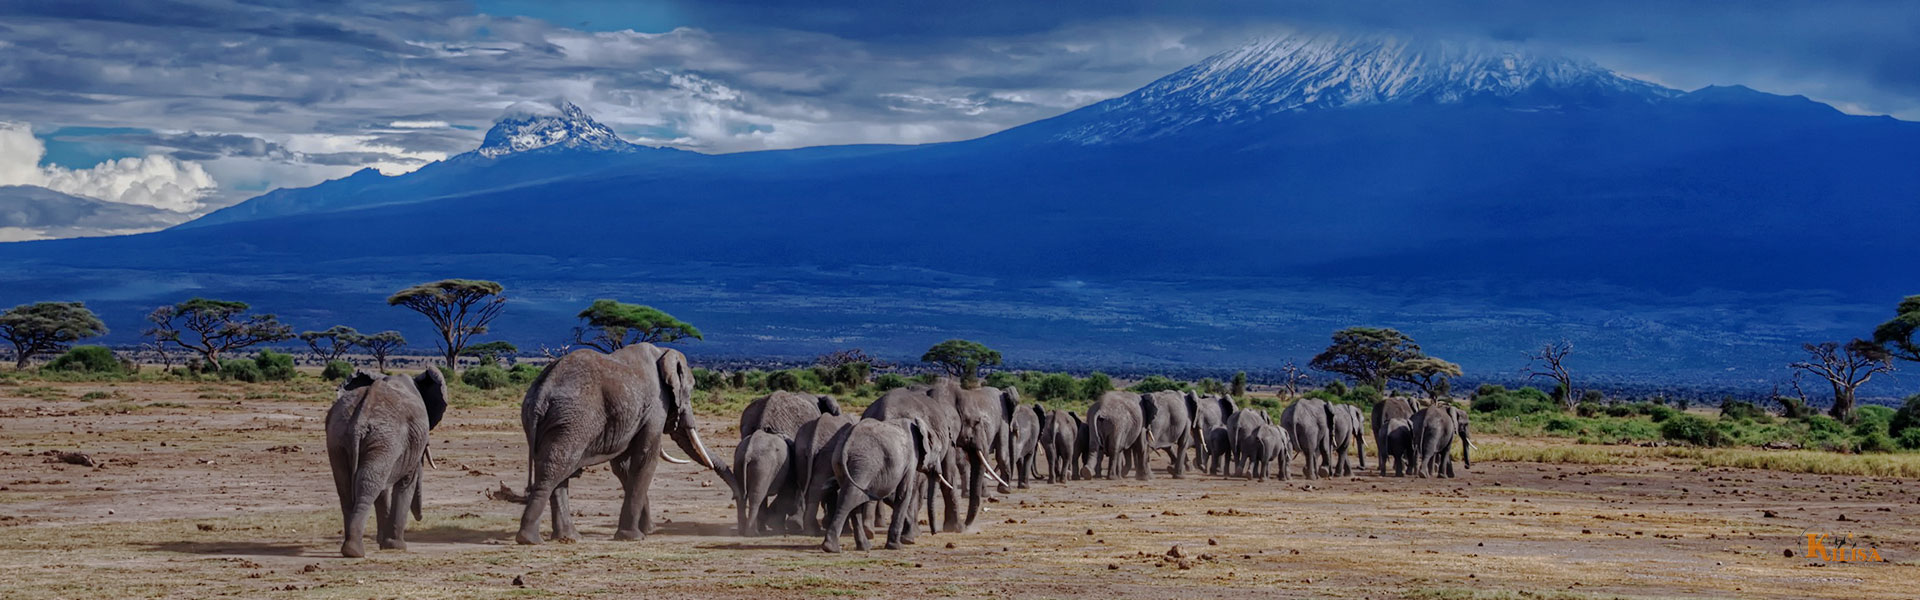 Mountain Kilimanjaro National Park